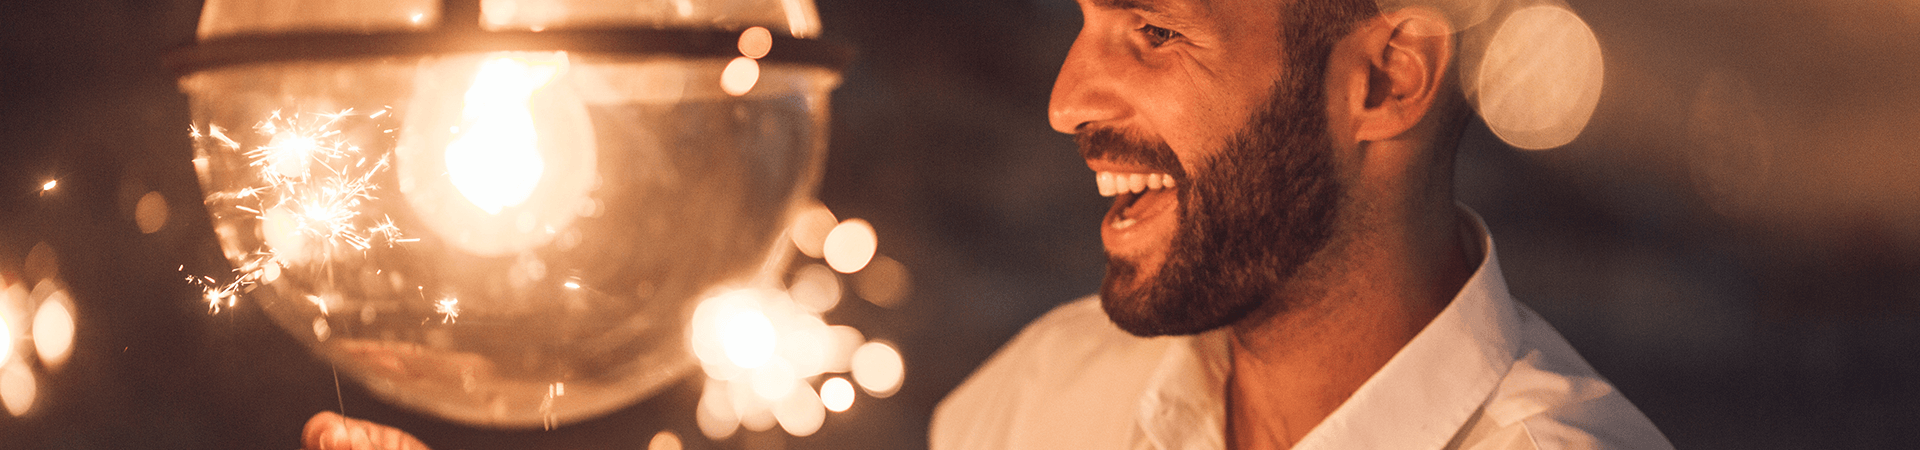 Un homme sourit en regardant les éteincelles de bougies